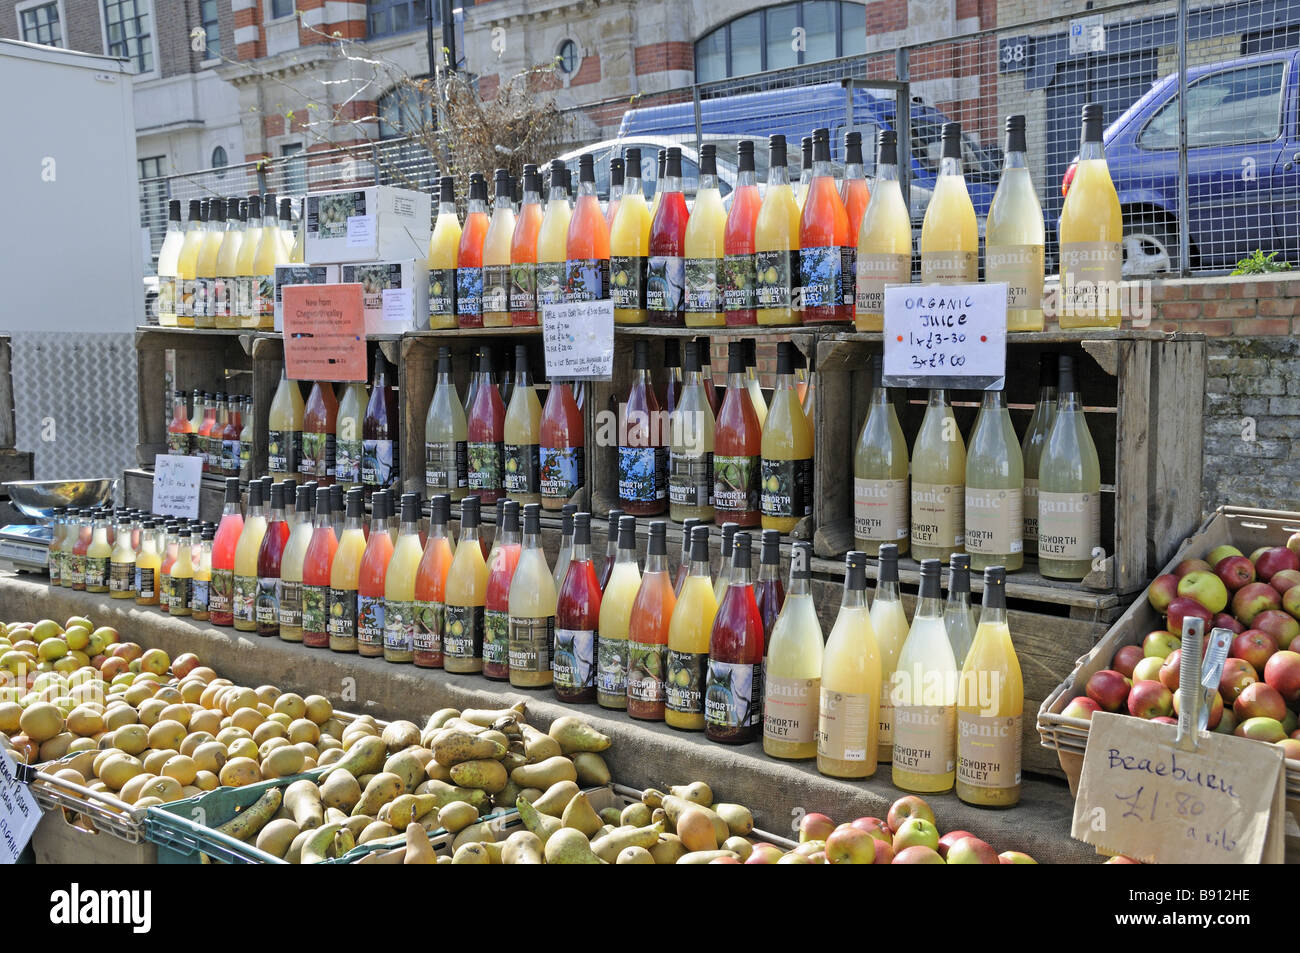 Bottles of organic juice on sale at Marylebone Farmers Market London England UK Stock Photo